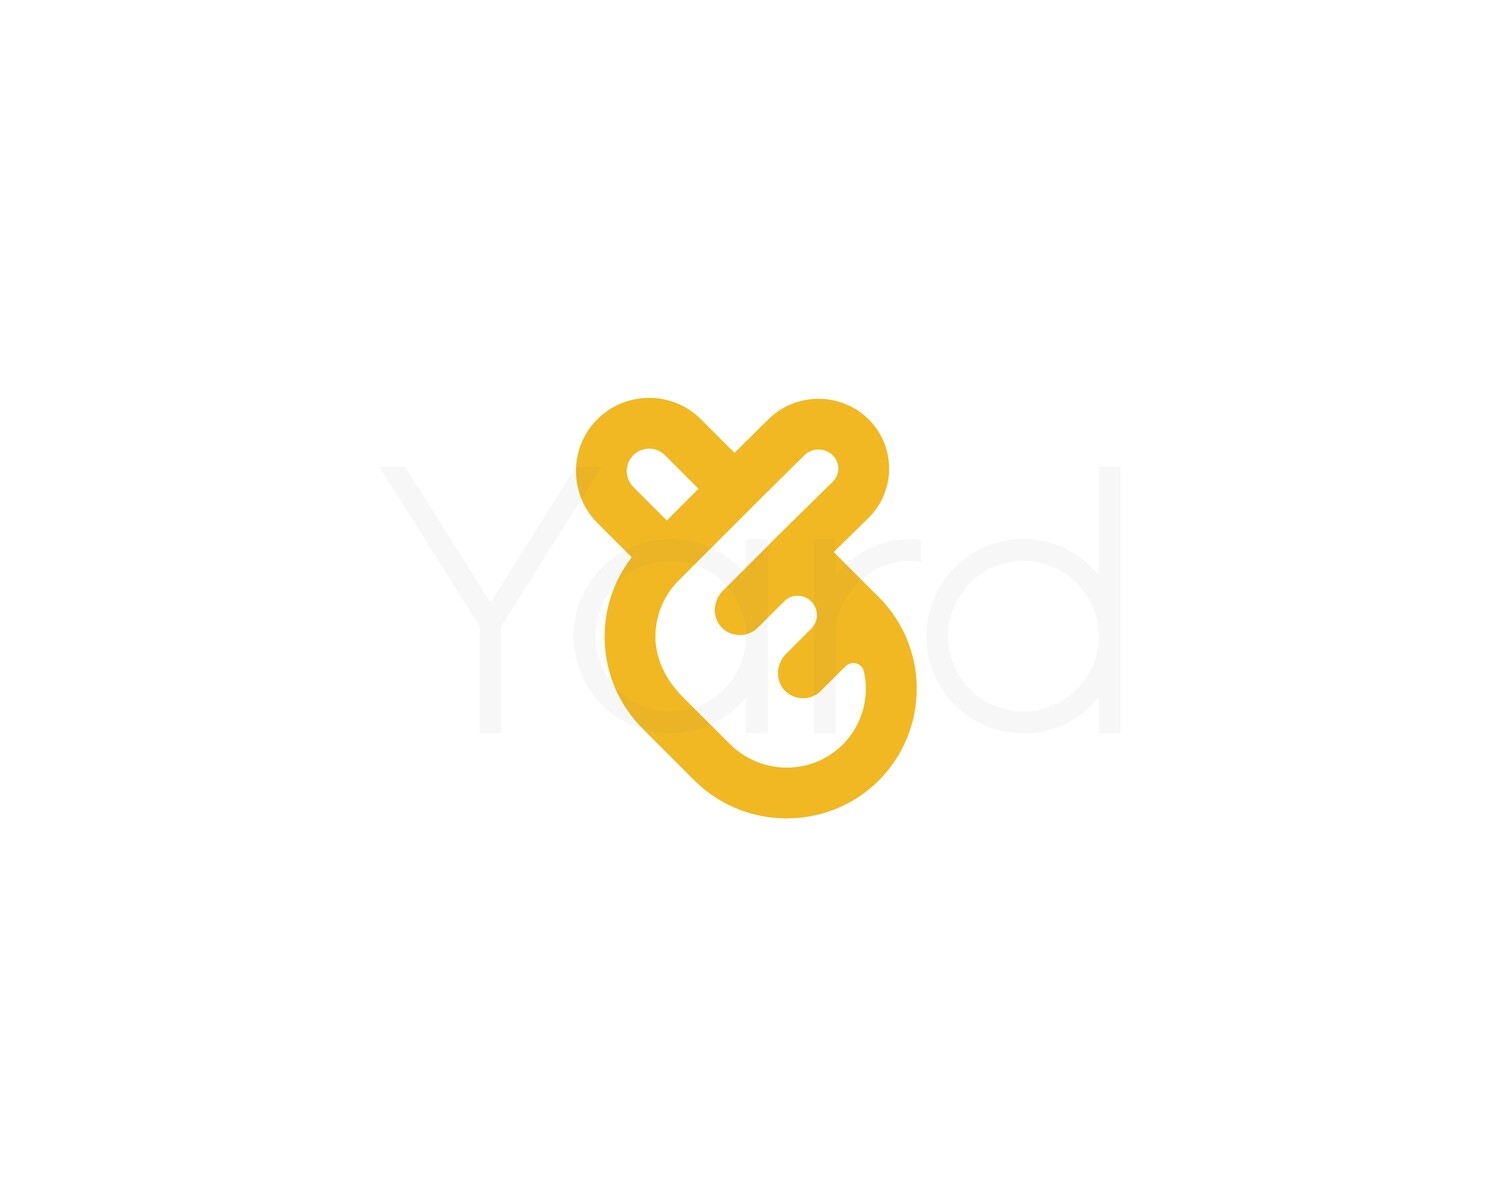 Ok vector logo. Heart from fingers icon. Letter V logotype. Like sign.